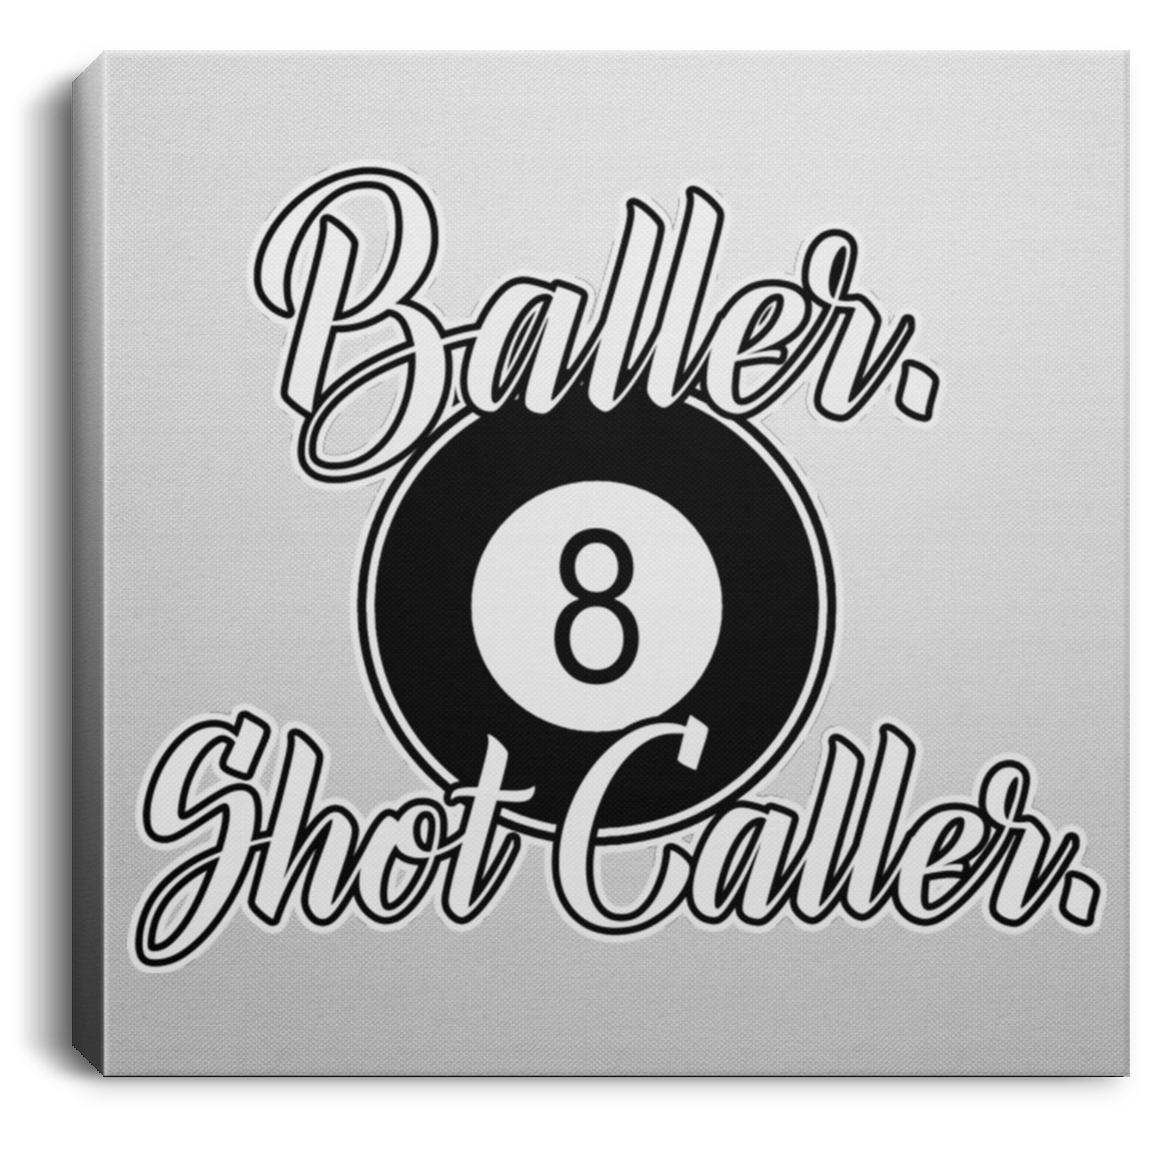 The GHOATS Custom Design #2. Baller. Shot Caller. Square Canvas .75in Frame